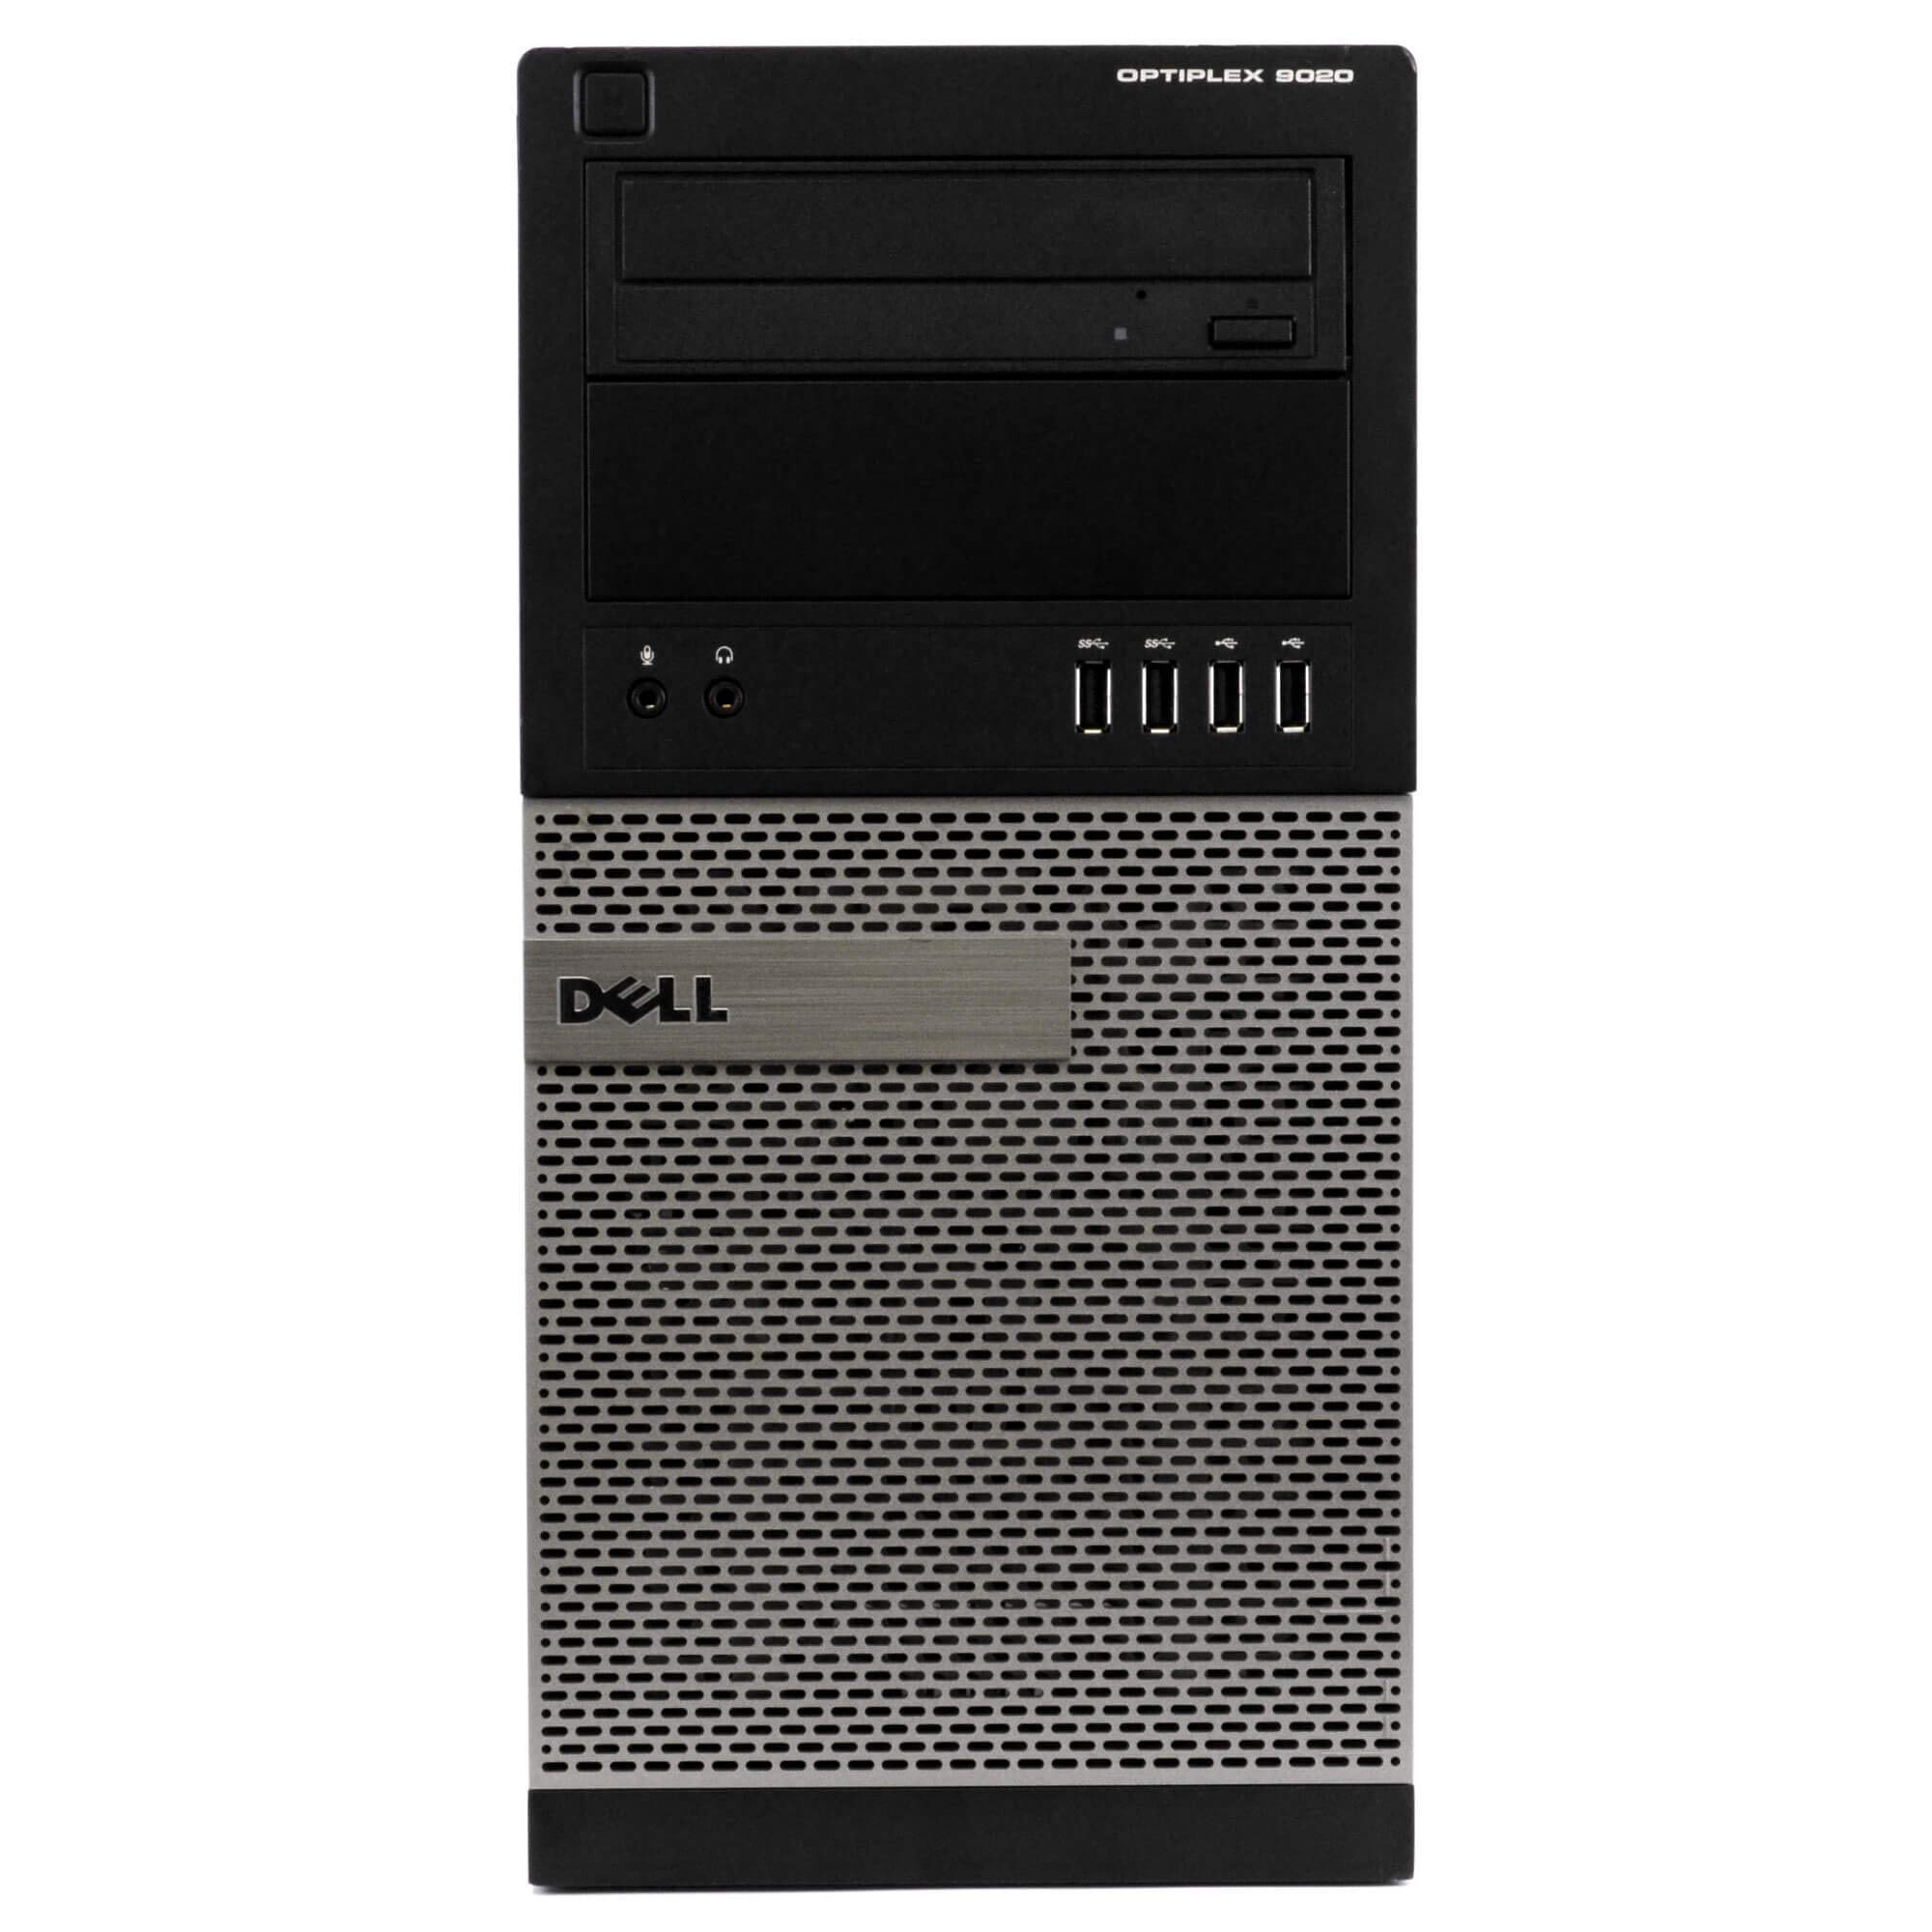 Dell Optiplex 9020 Mini-Tower Desktop, Quad Core i7 4770 3.4Ghz, 32GB DDR3 RAM, 1TB SSD Hard Drive, Windows 10 (Renewed)